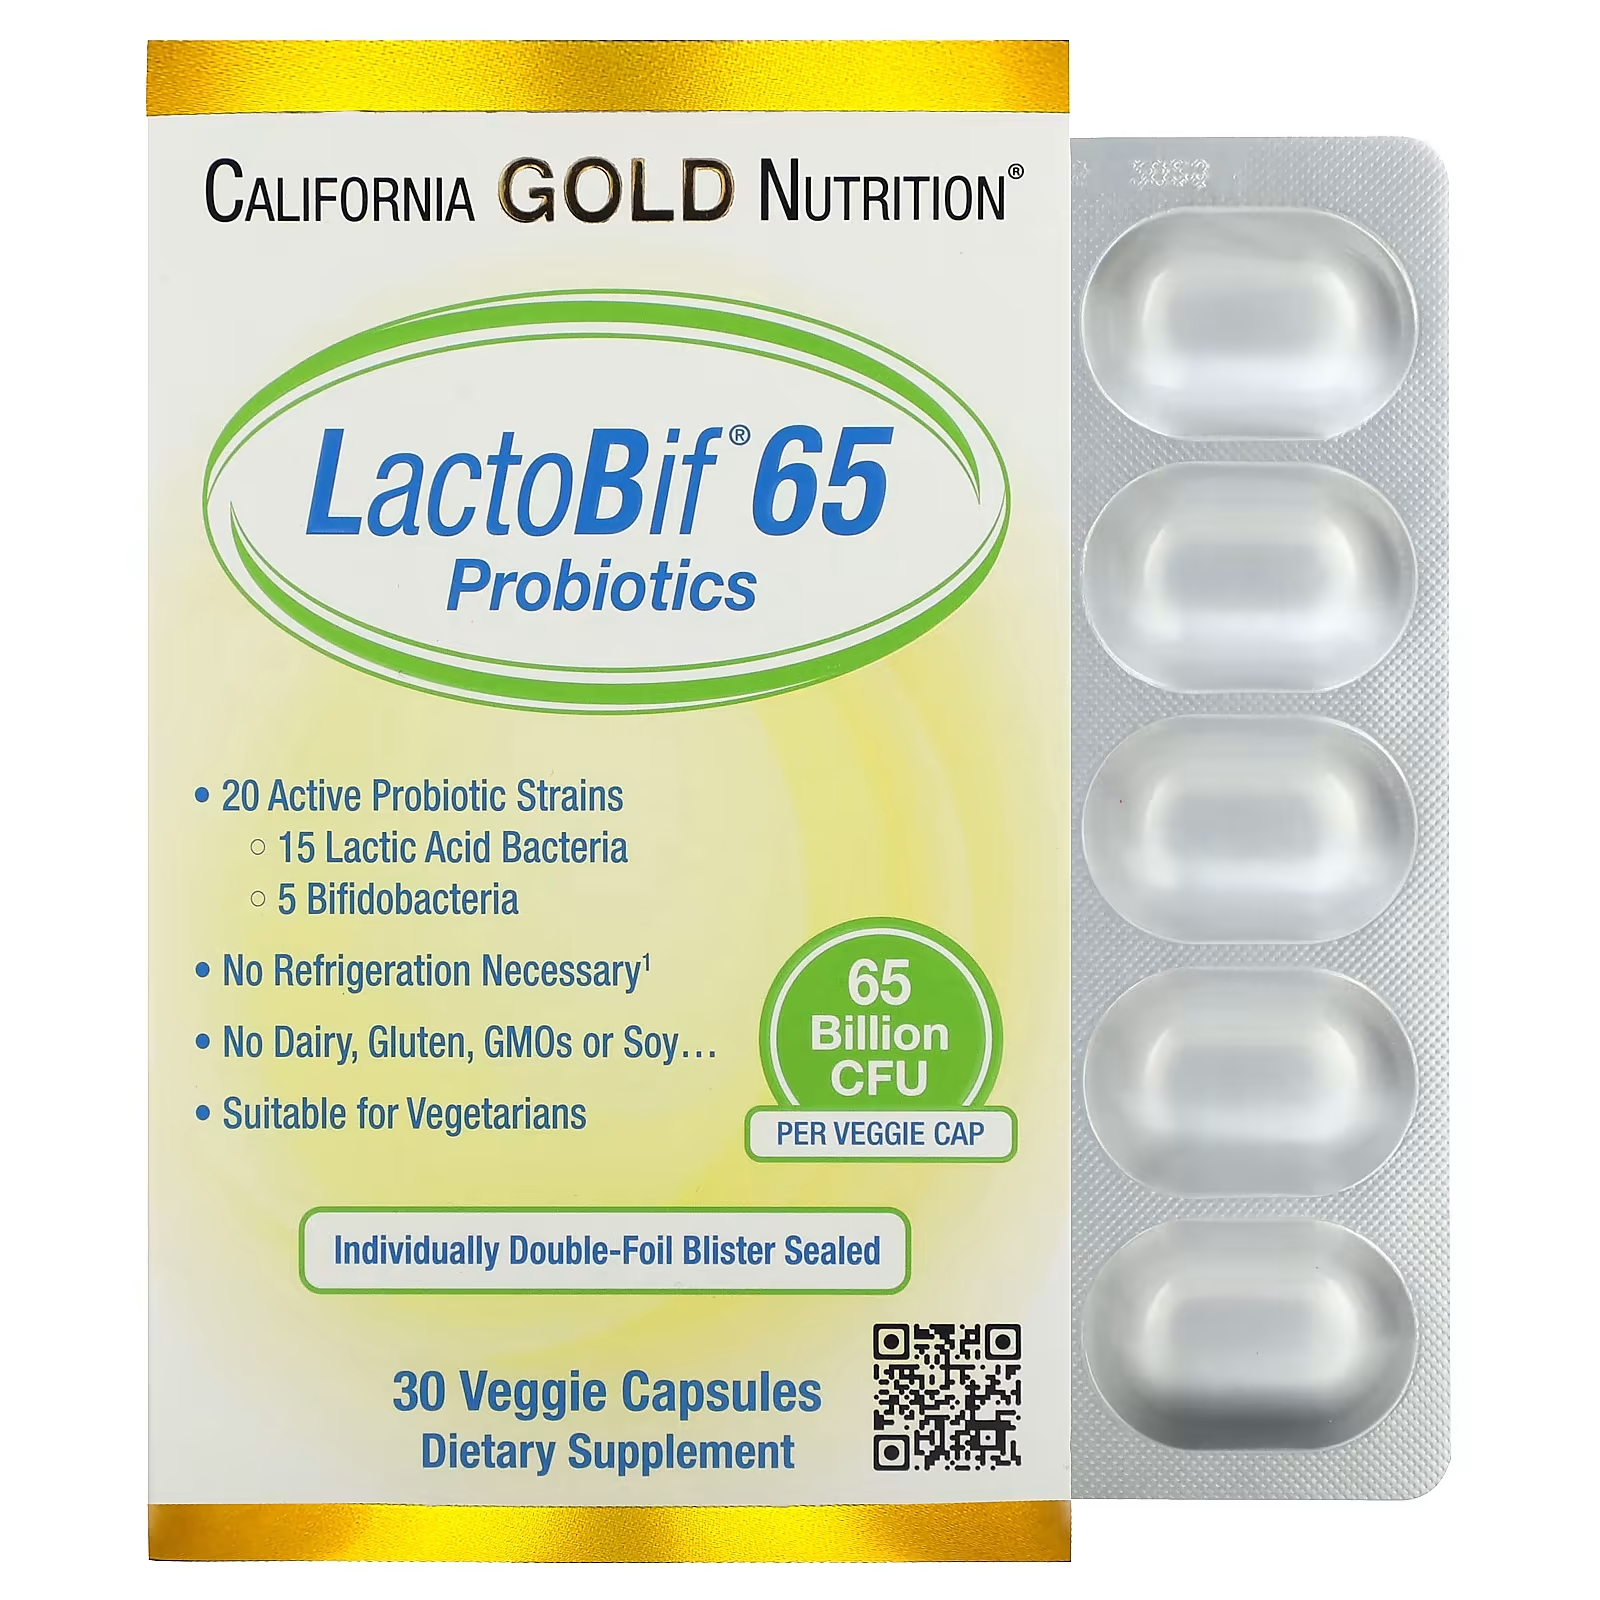 California Gold Nutrition LactoBif 65 Пробиотики 65 миллиардов КОЕ 30 растительных капсул